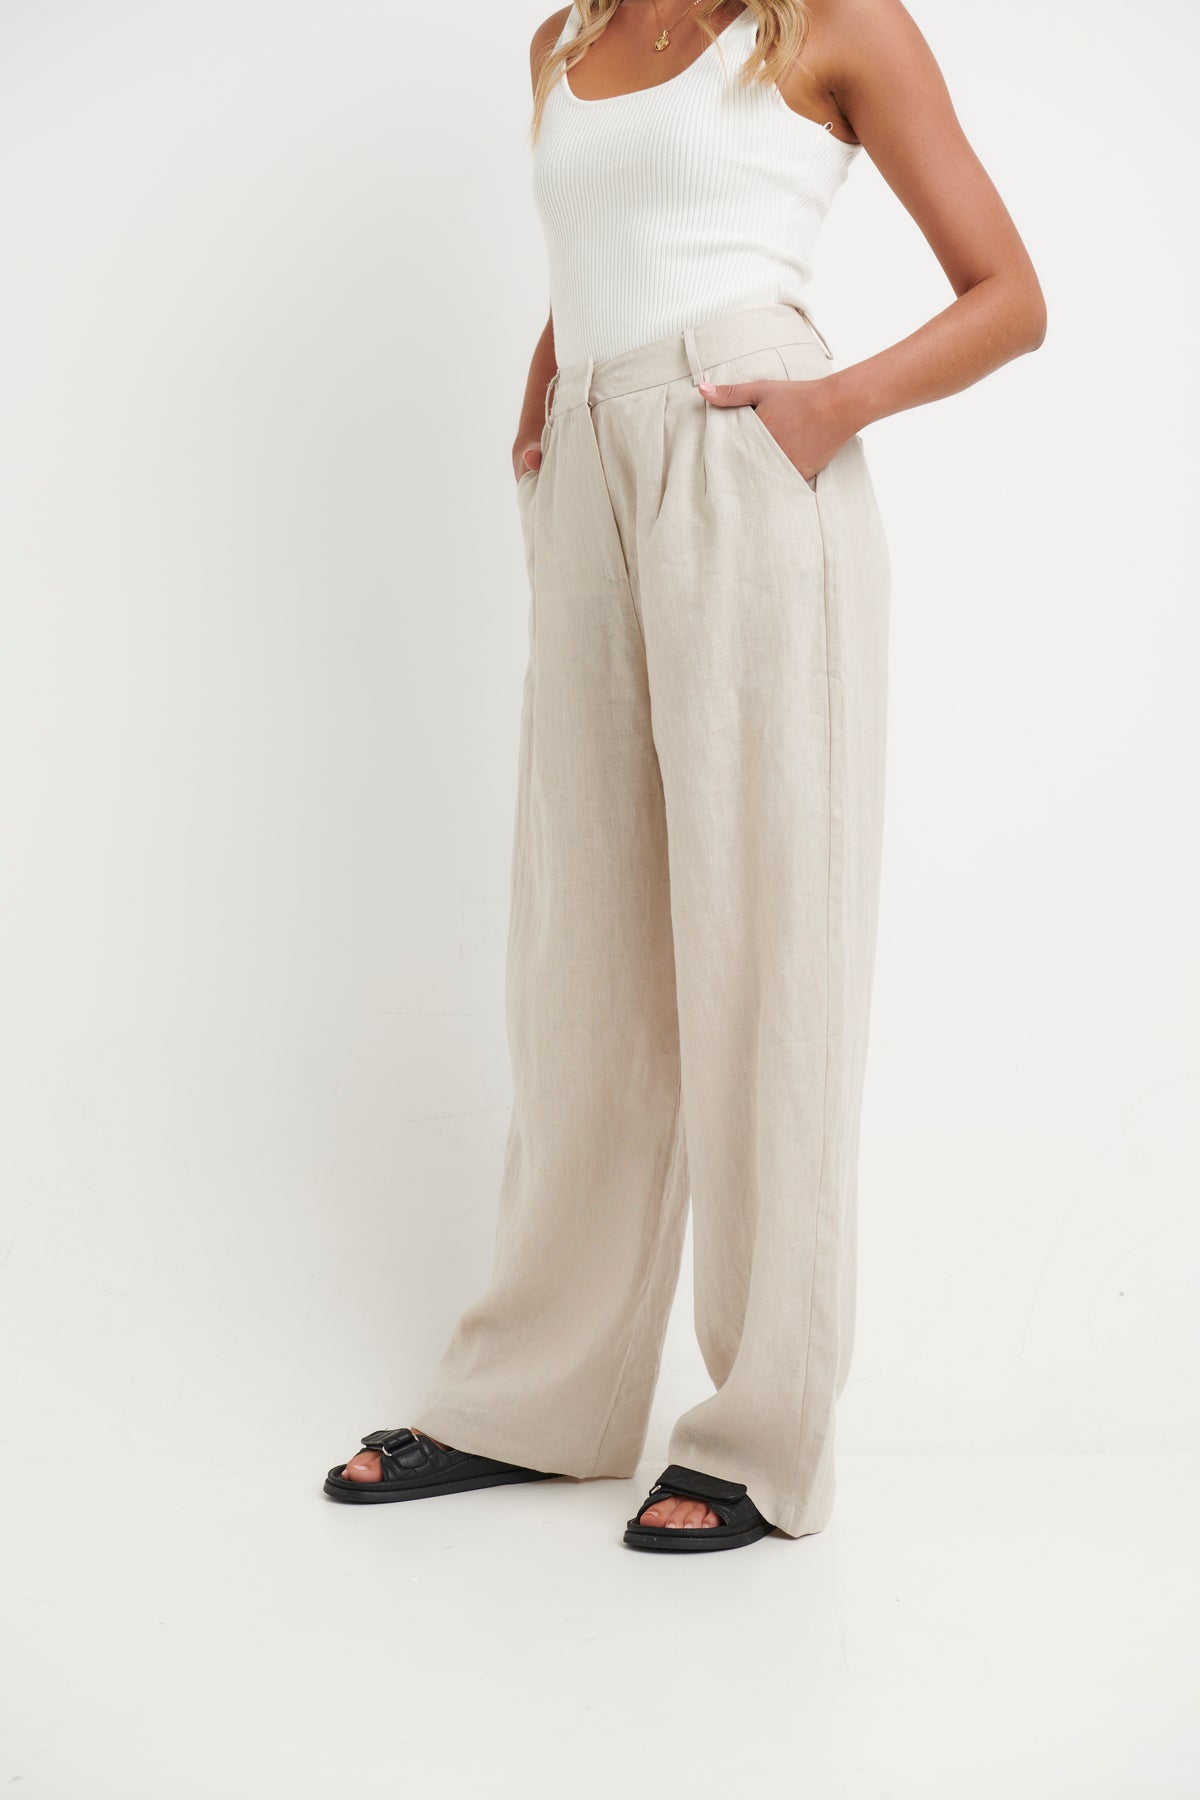 Laney Linen Pant Oat - FINAL SALE